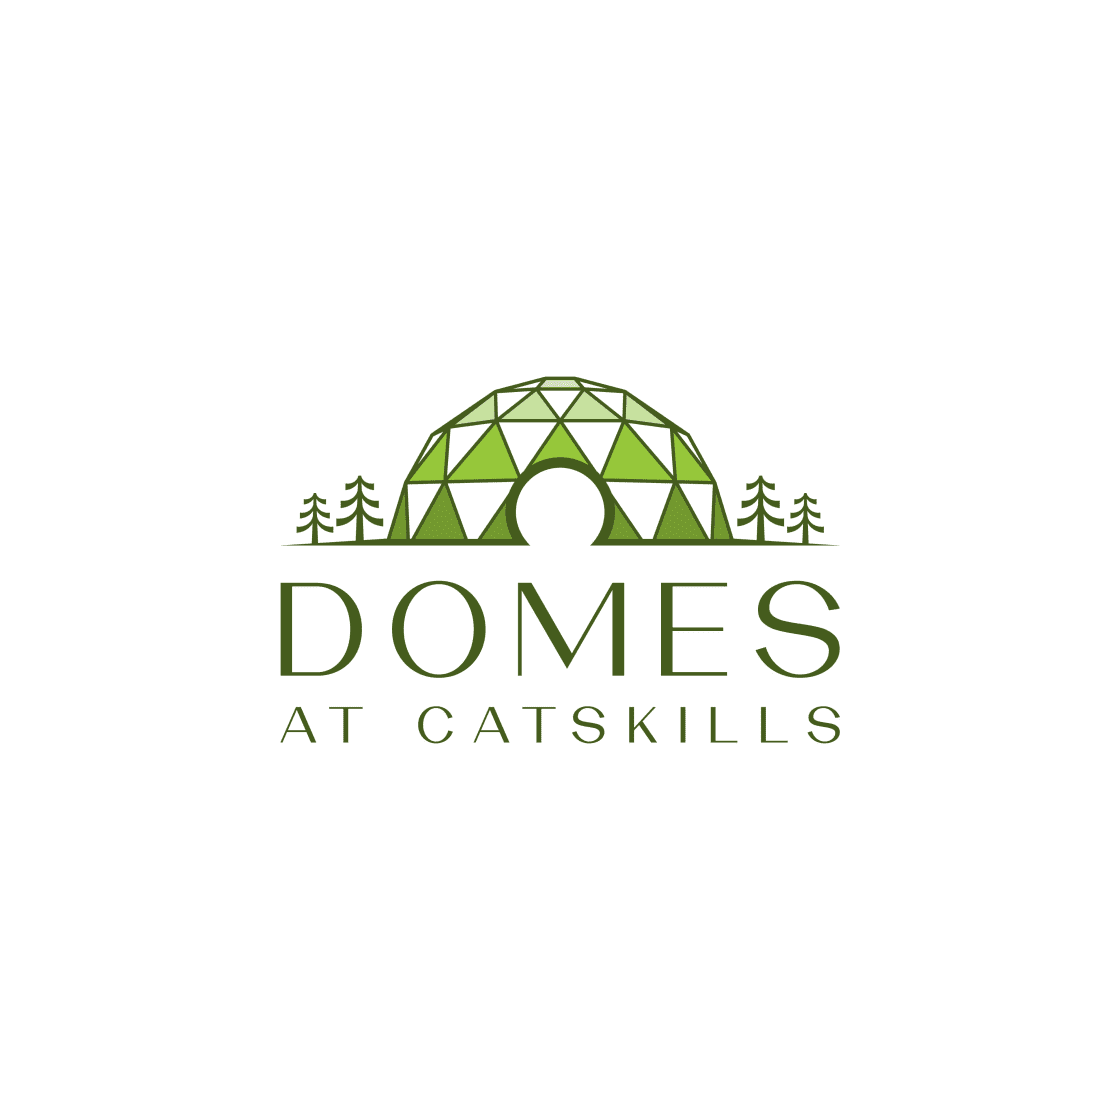 The Domes At Catskills